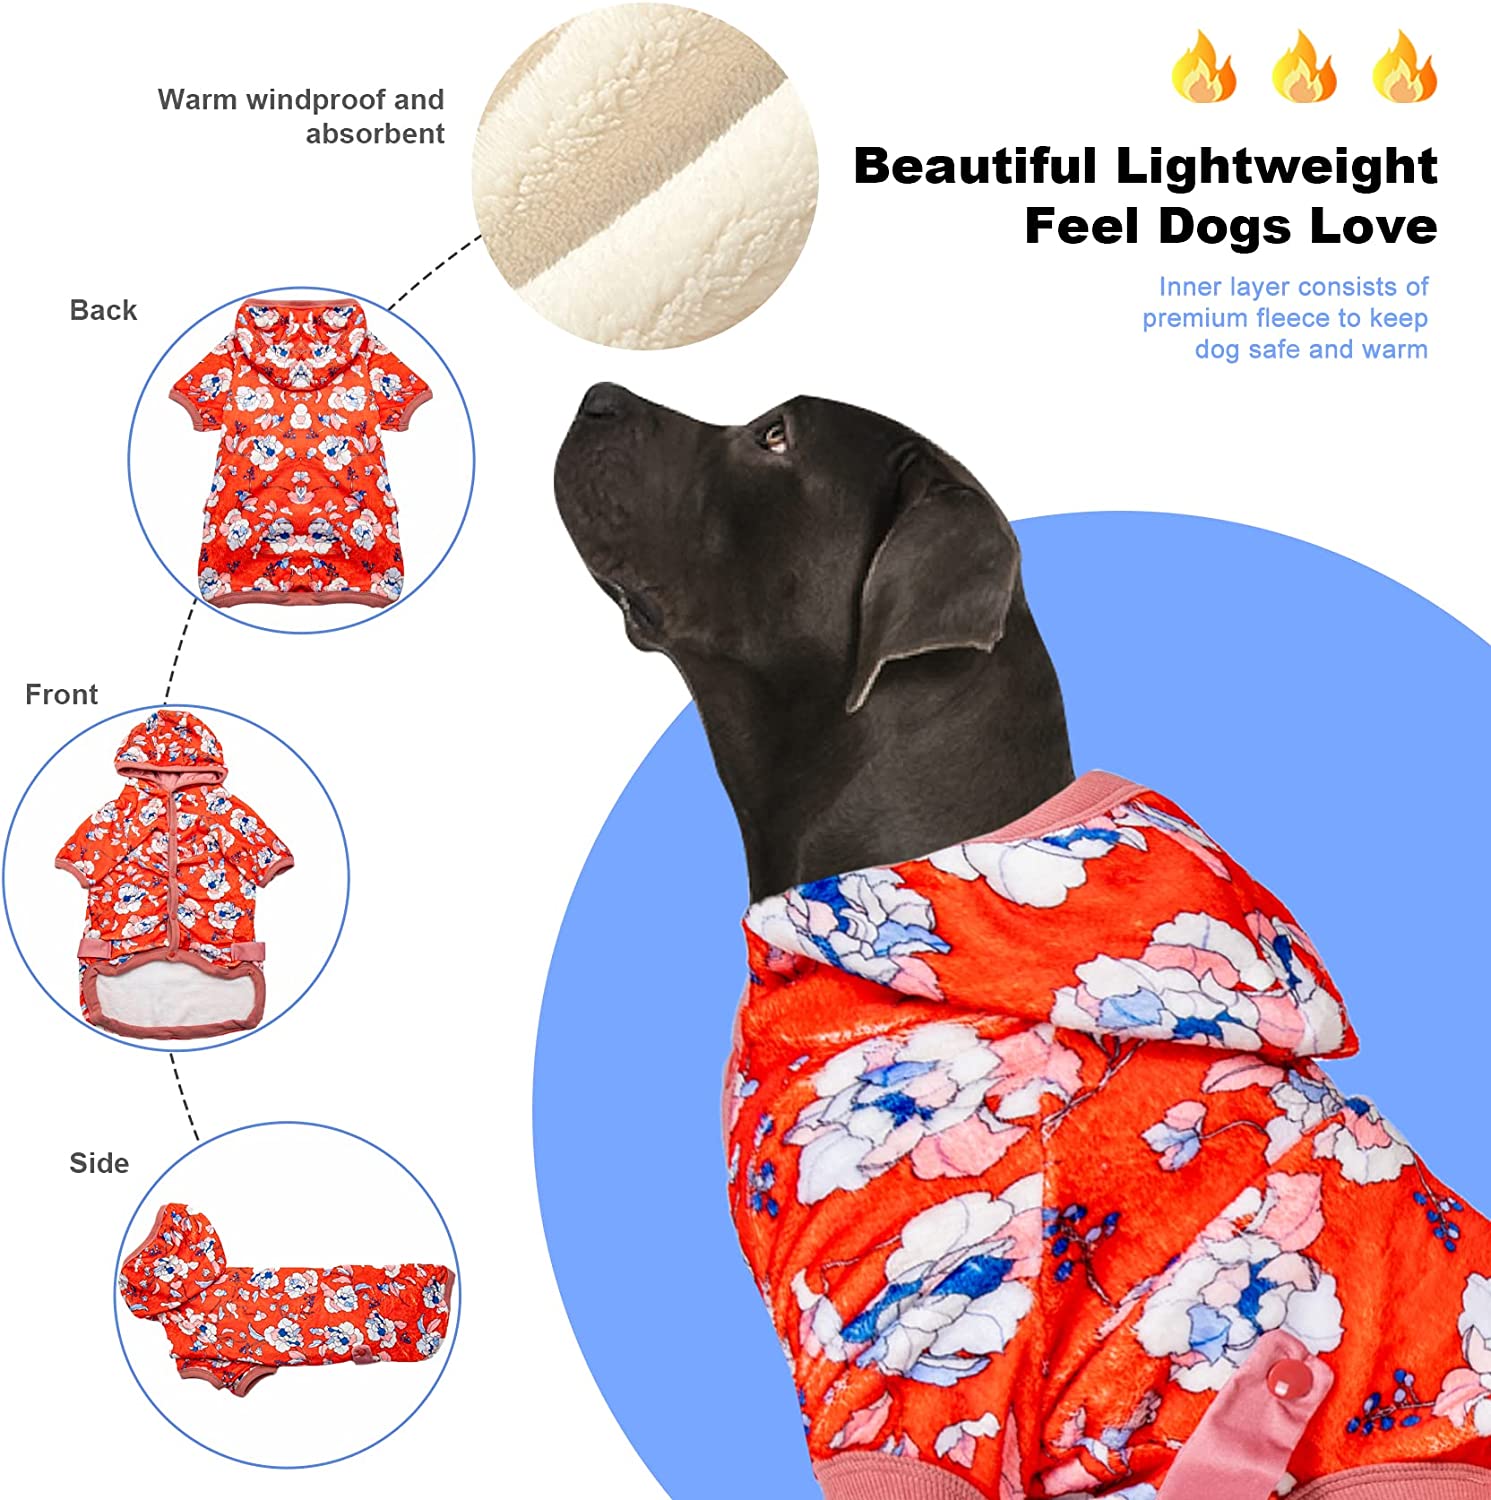 لباس های حیوان خانگی Lovinpet برای سگ های پیتبول / دوبرمن / هاسکی / لابرادور / گلدن رتریور / روتوایلر / ژرمن شپرد / آکیتا و غیره و سایر سگ های بزرگ طراحی شده است.